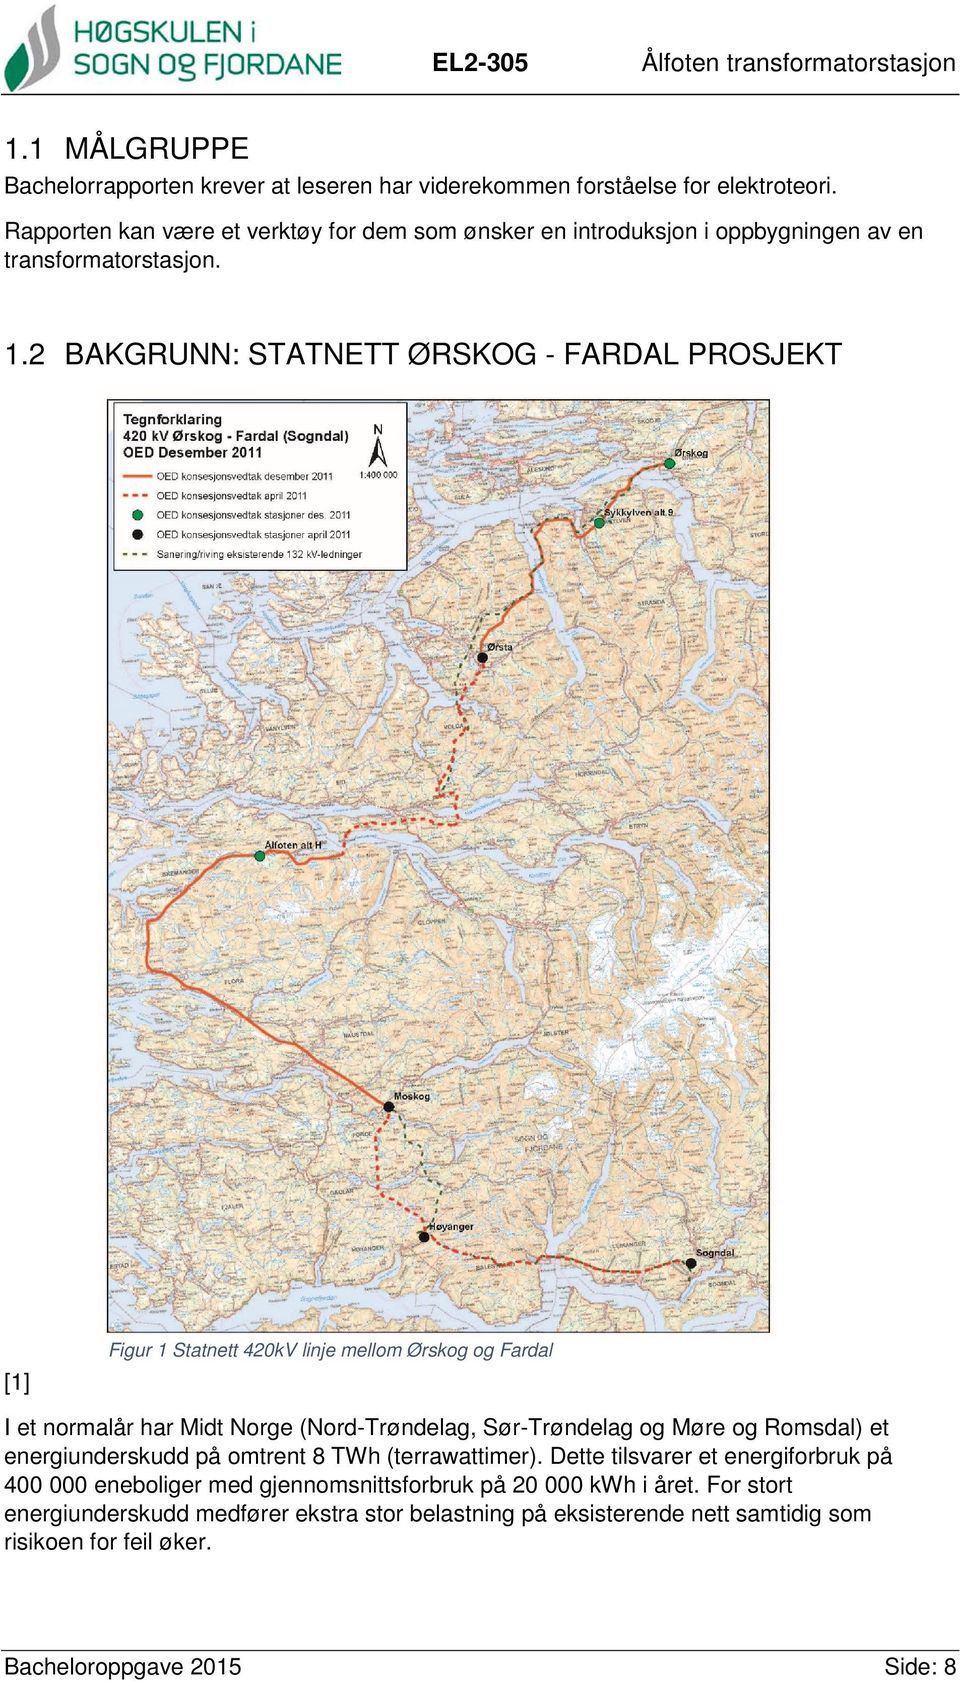 2 BAKGRUNN: STATNETT ØRSKOG - FARDAL PROSJEKT [1] Figur 1 Statnett 420kV linje mellom Ørskog og Fardal I et normalår har Midt Norge (Nord-Trøndelag, Sør-Trøndelag og Møre